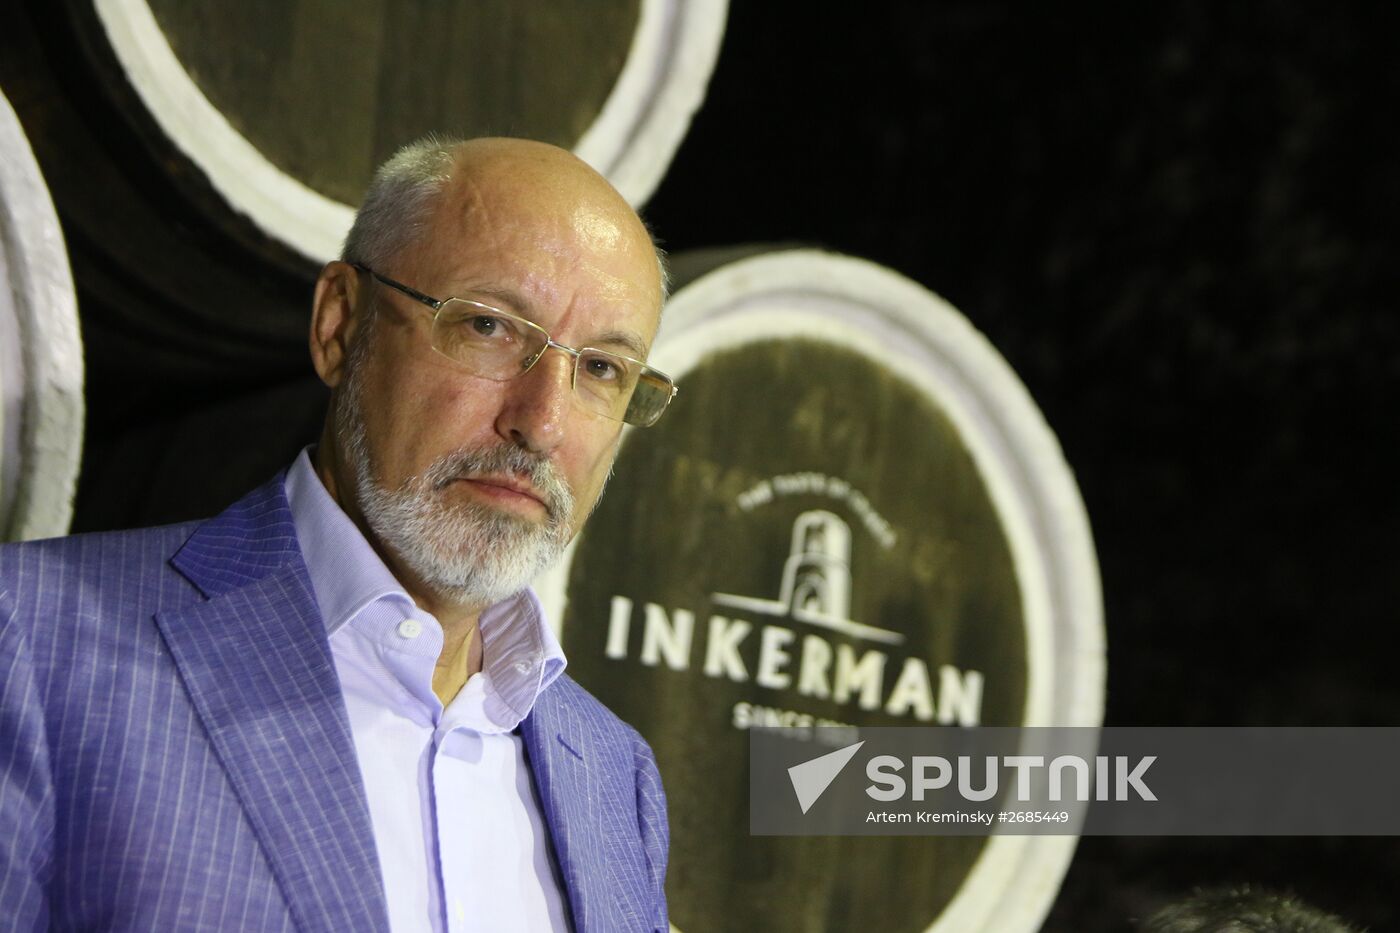 Inkerman Winery in Crimea